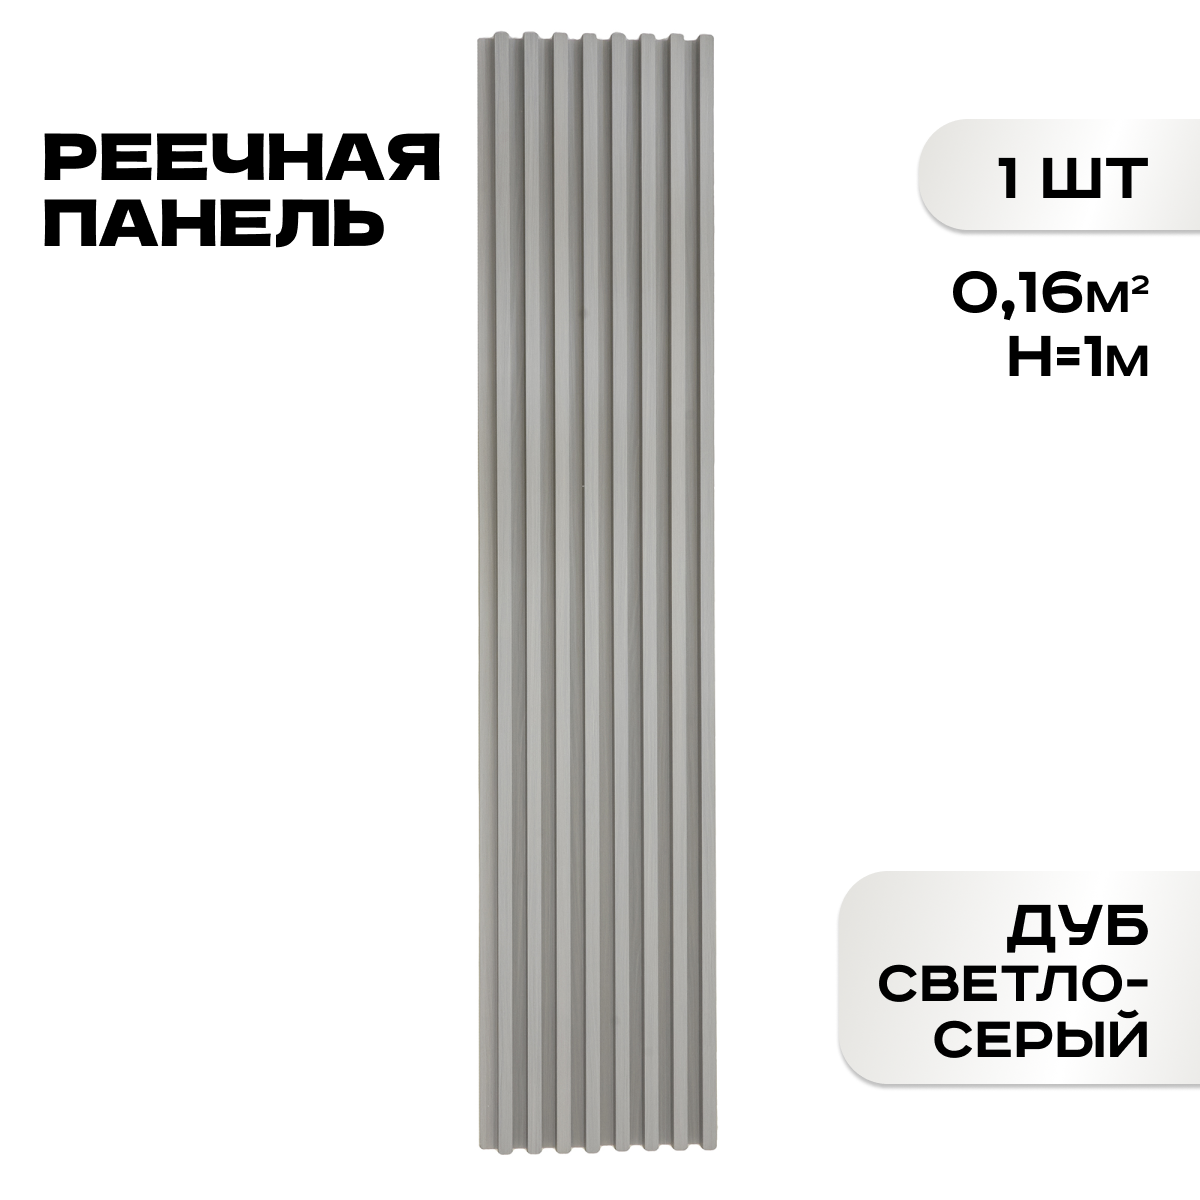 Реечные панели ПВХ LAKO DECOR "Дуб светло-серый" 1000*160*23мм